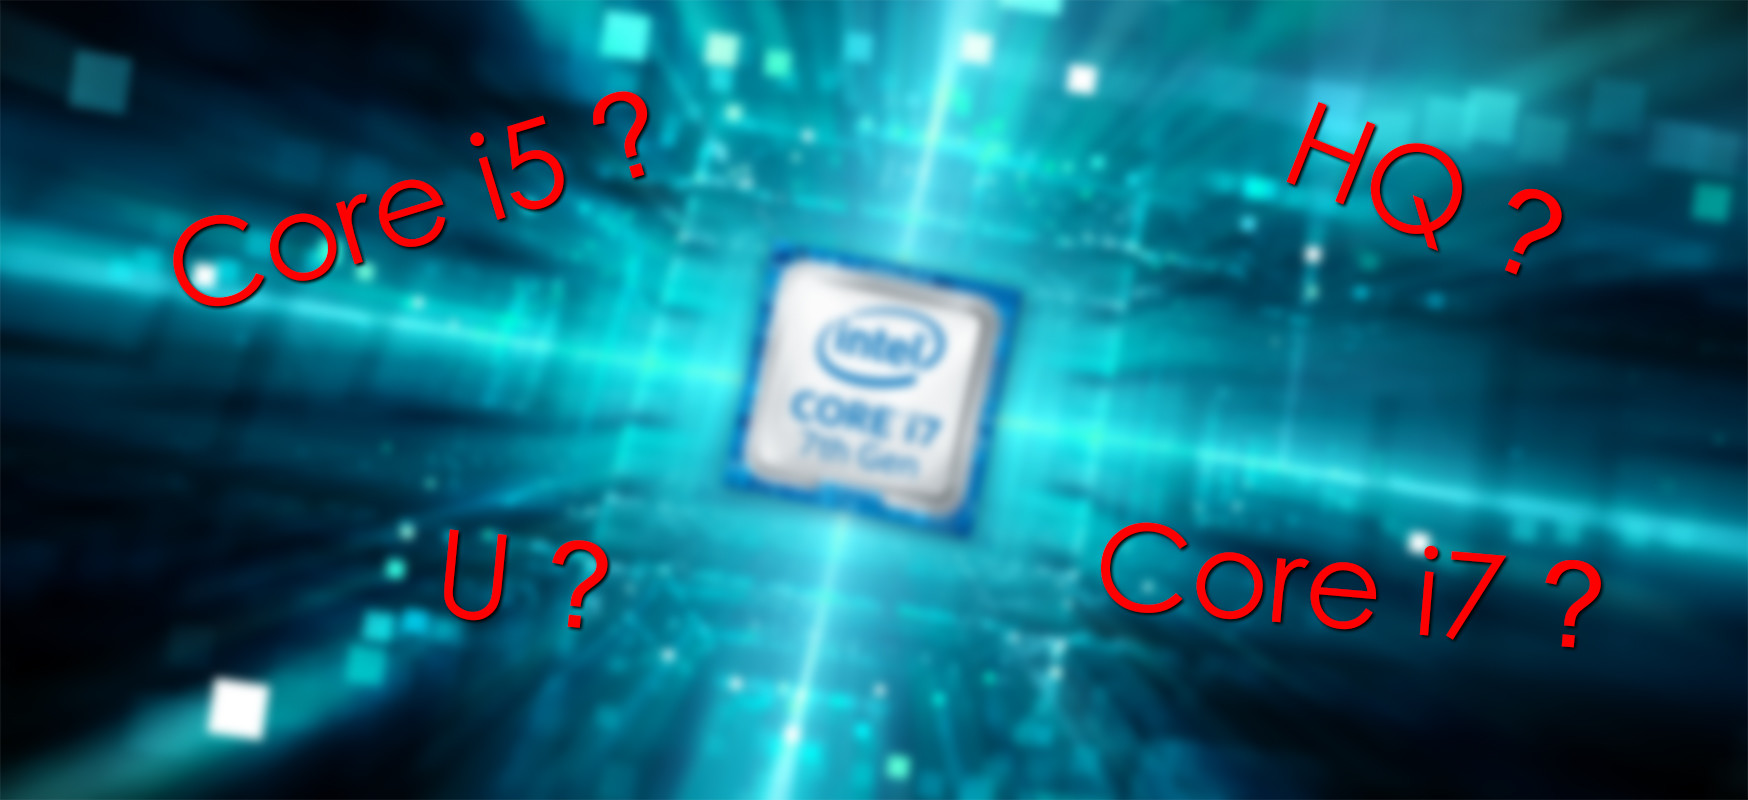 Intel 7. Nesil i7-U Serisi, i5-HQ Serisine Karşı